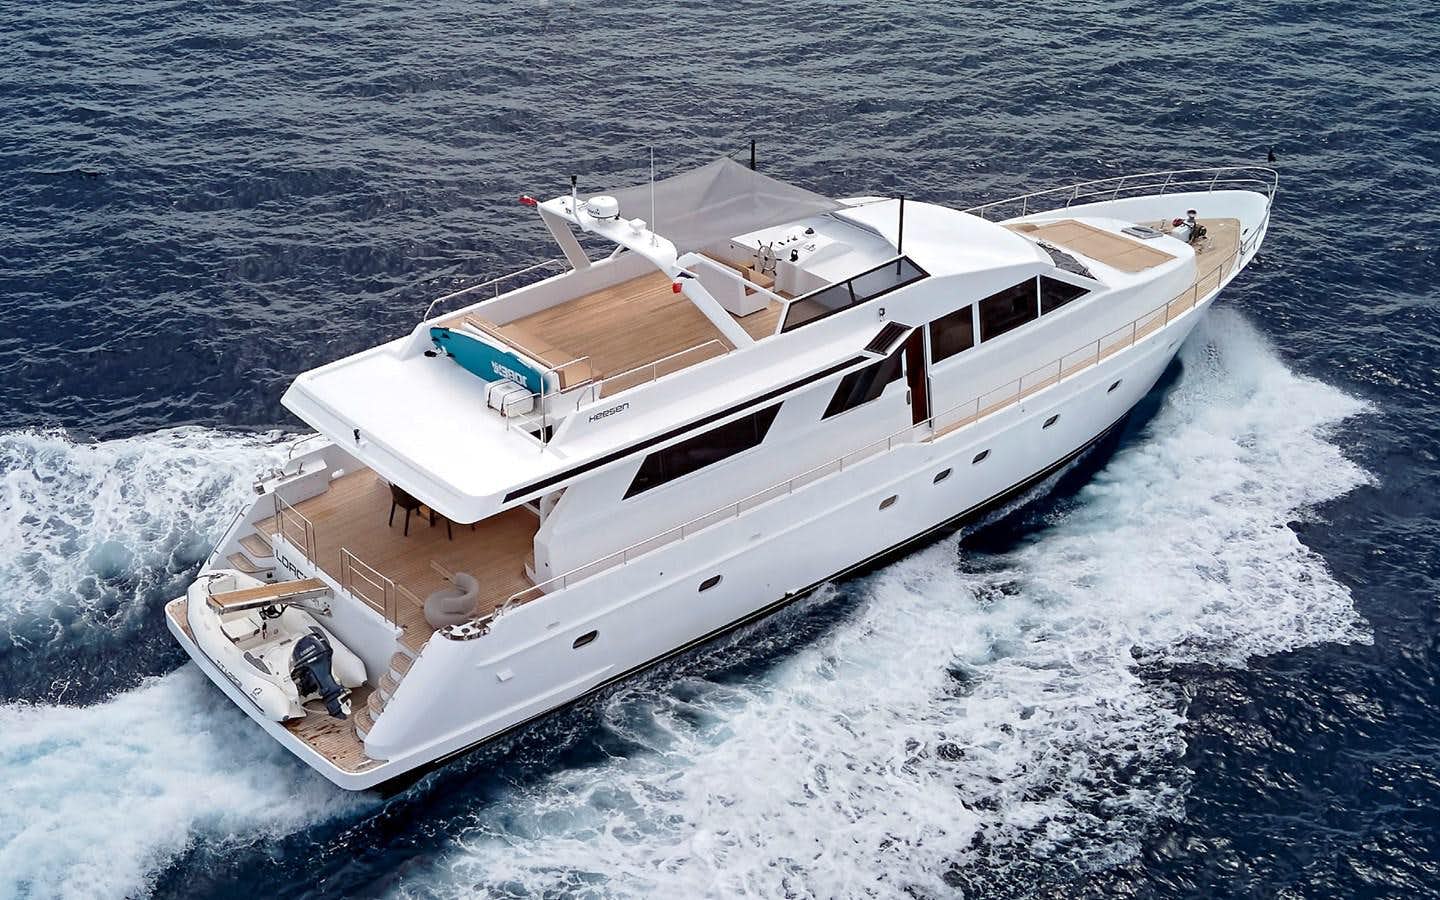 Lorca
Yacht for Sale